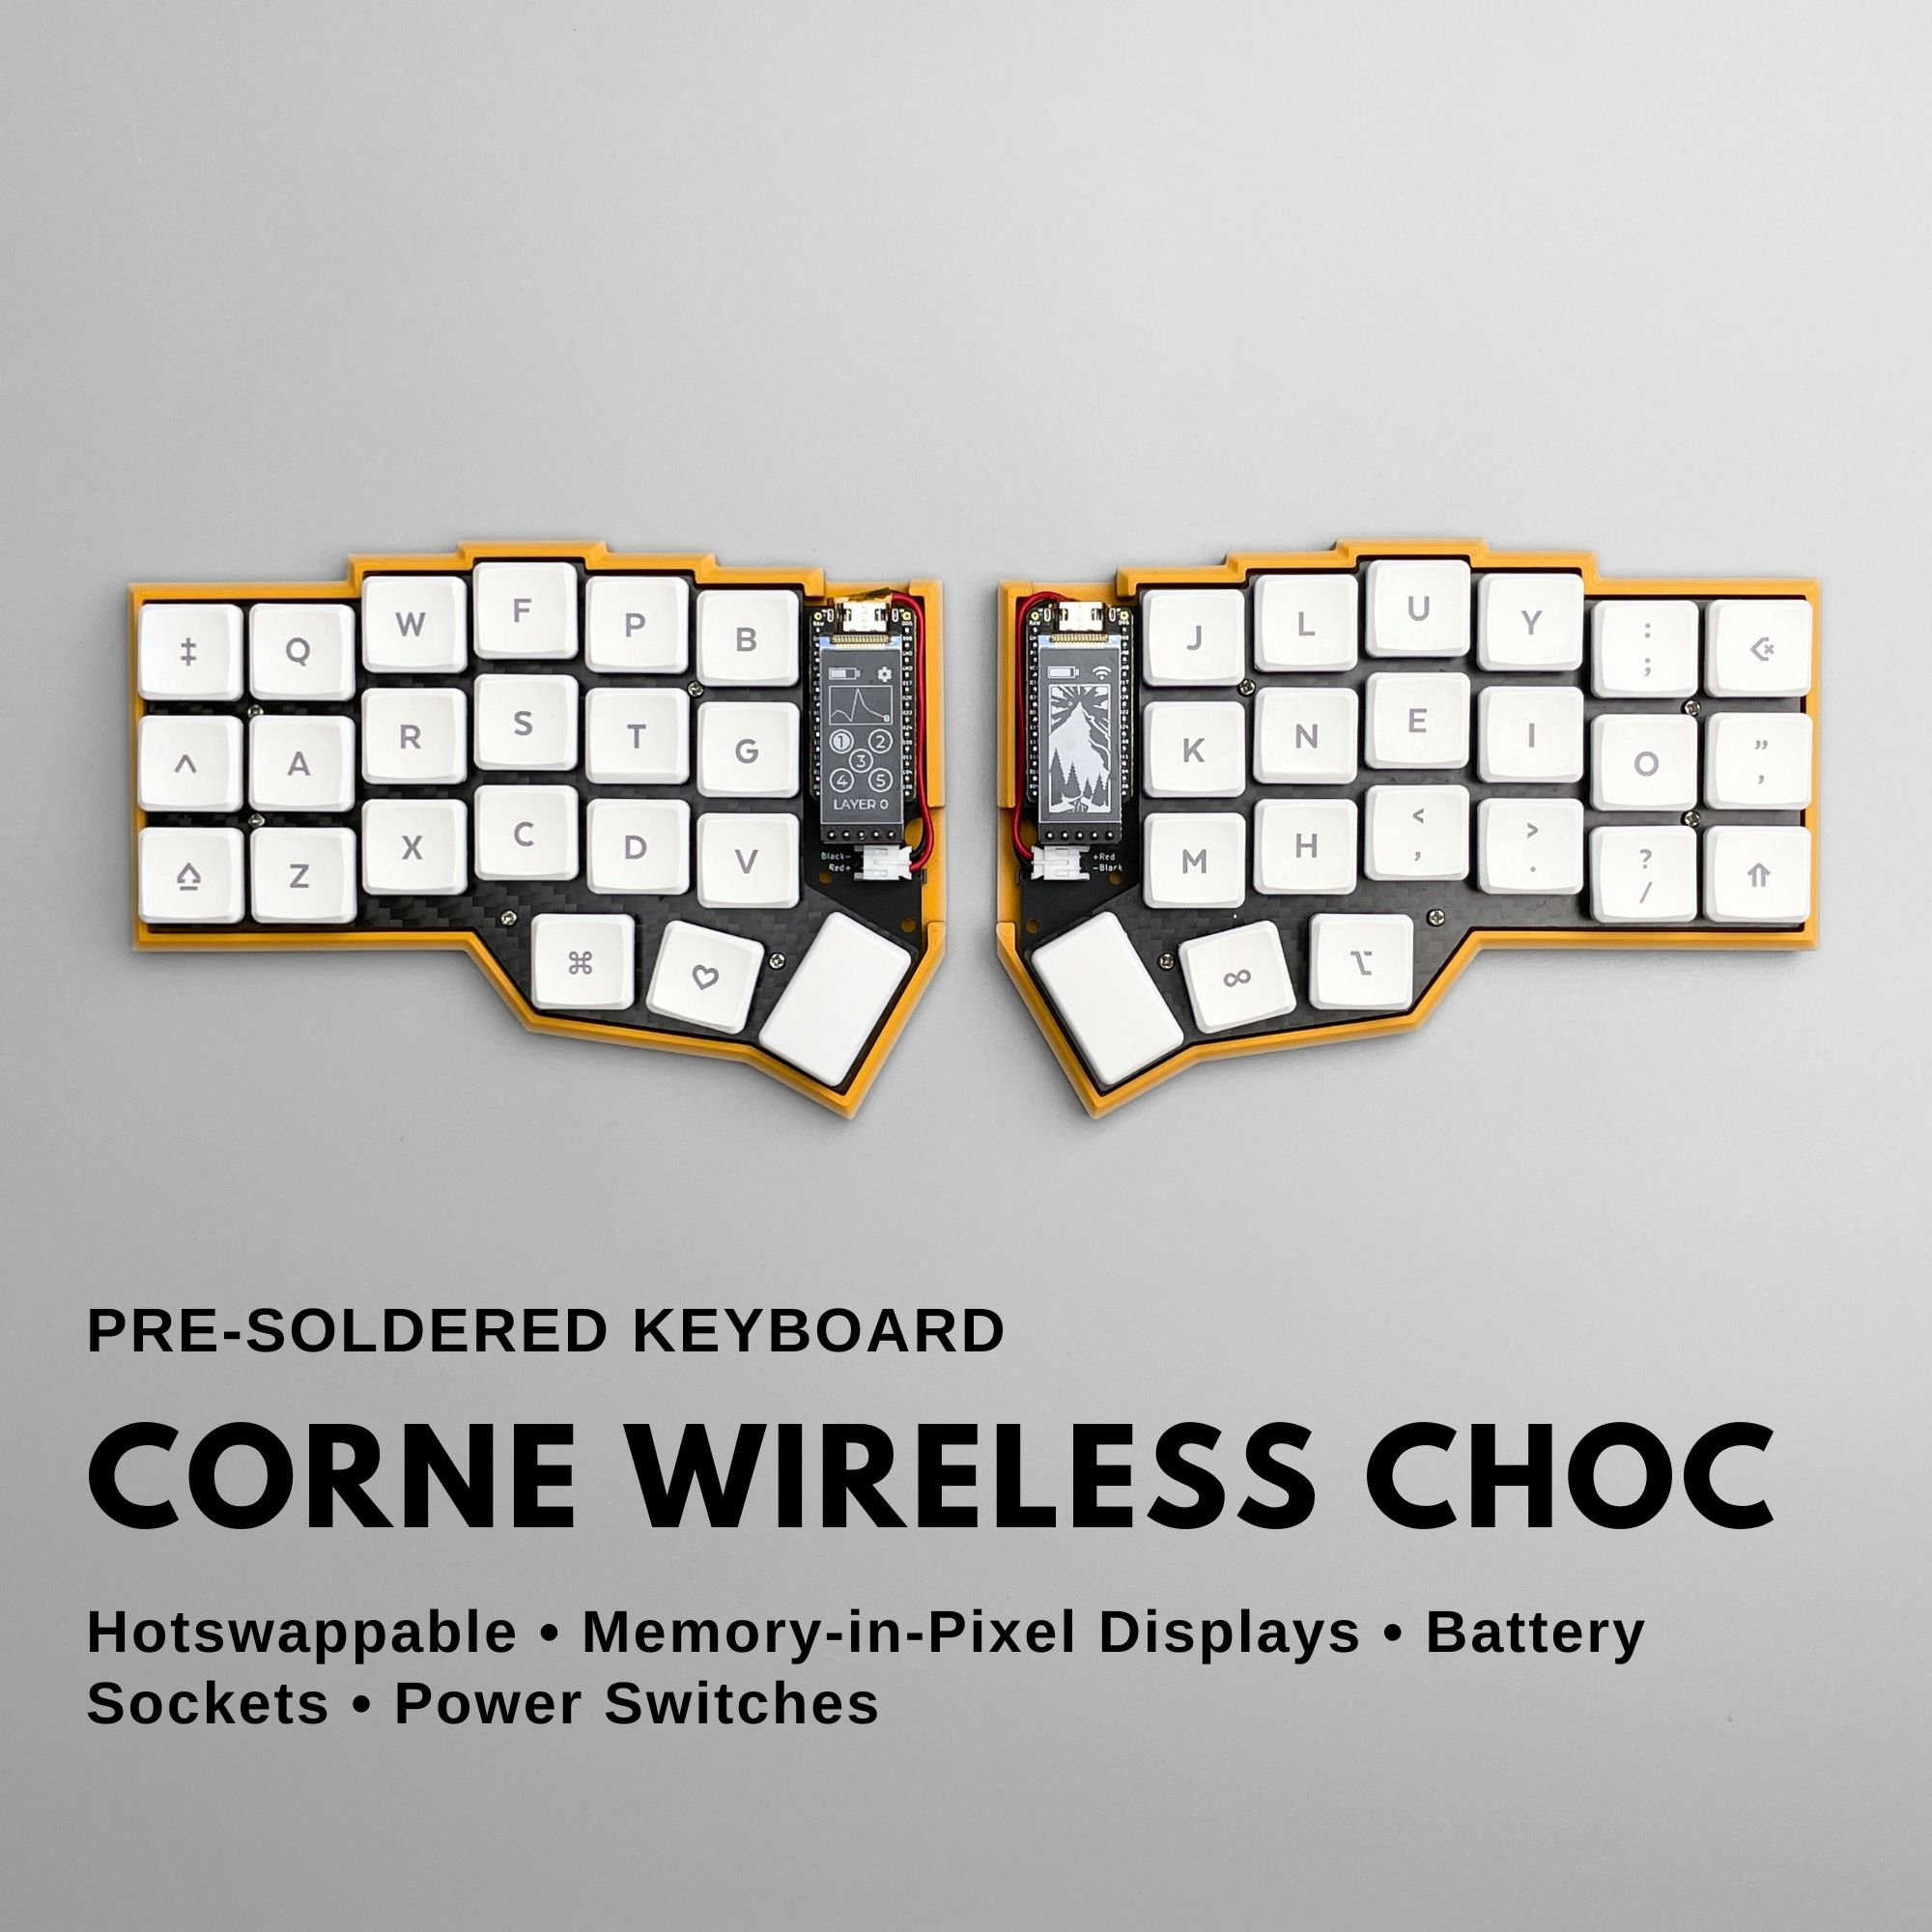 Corne Wireless Choc low profile split keyboard